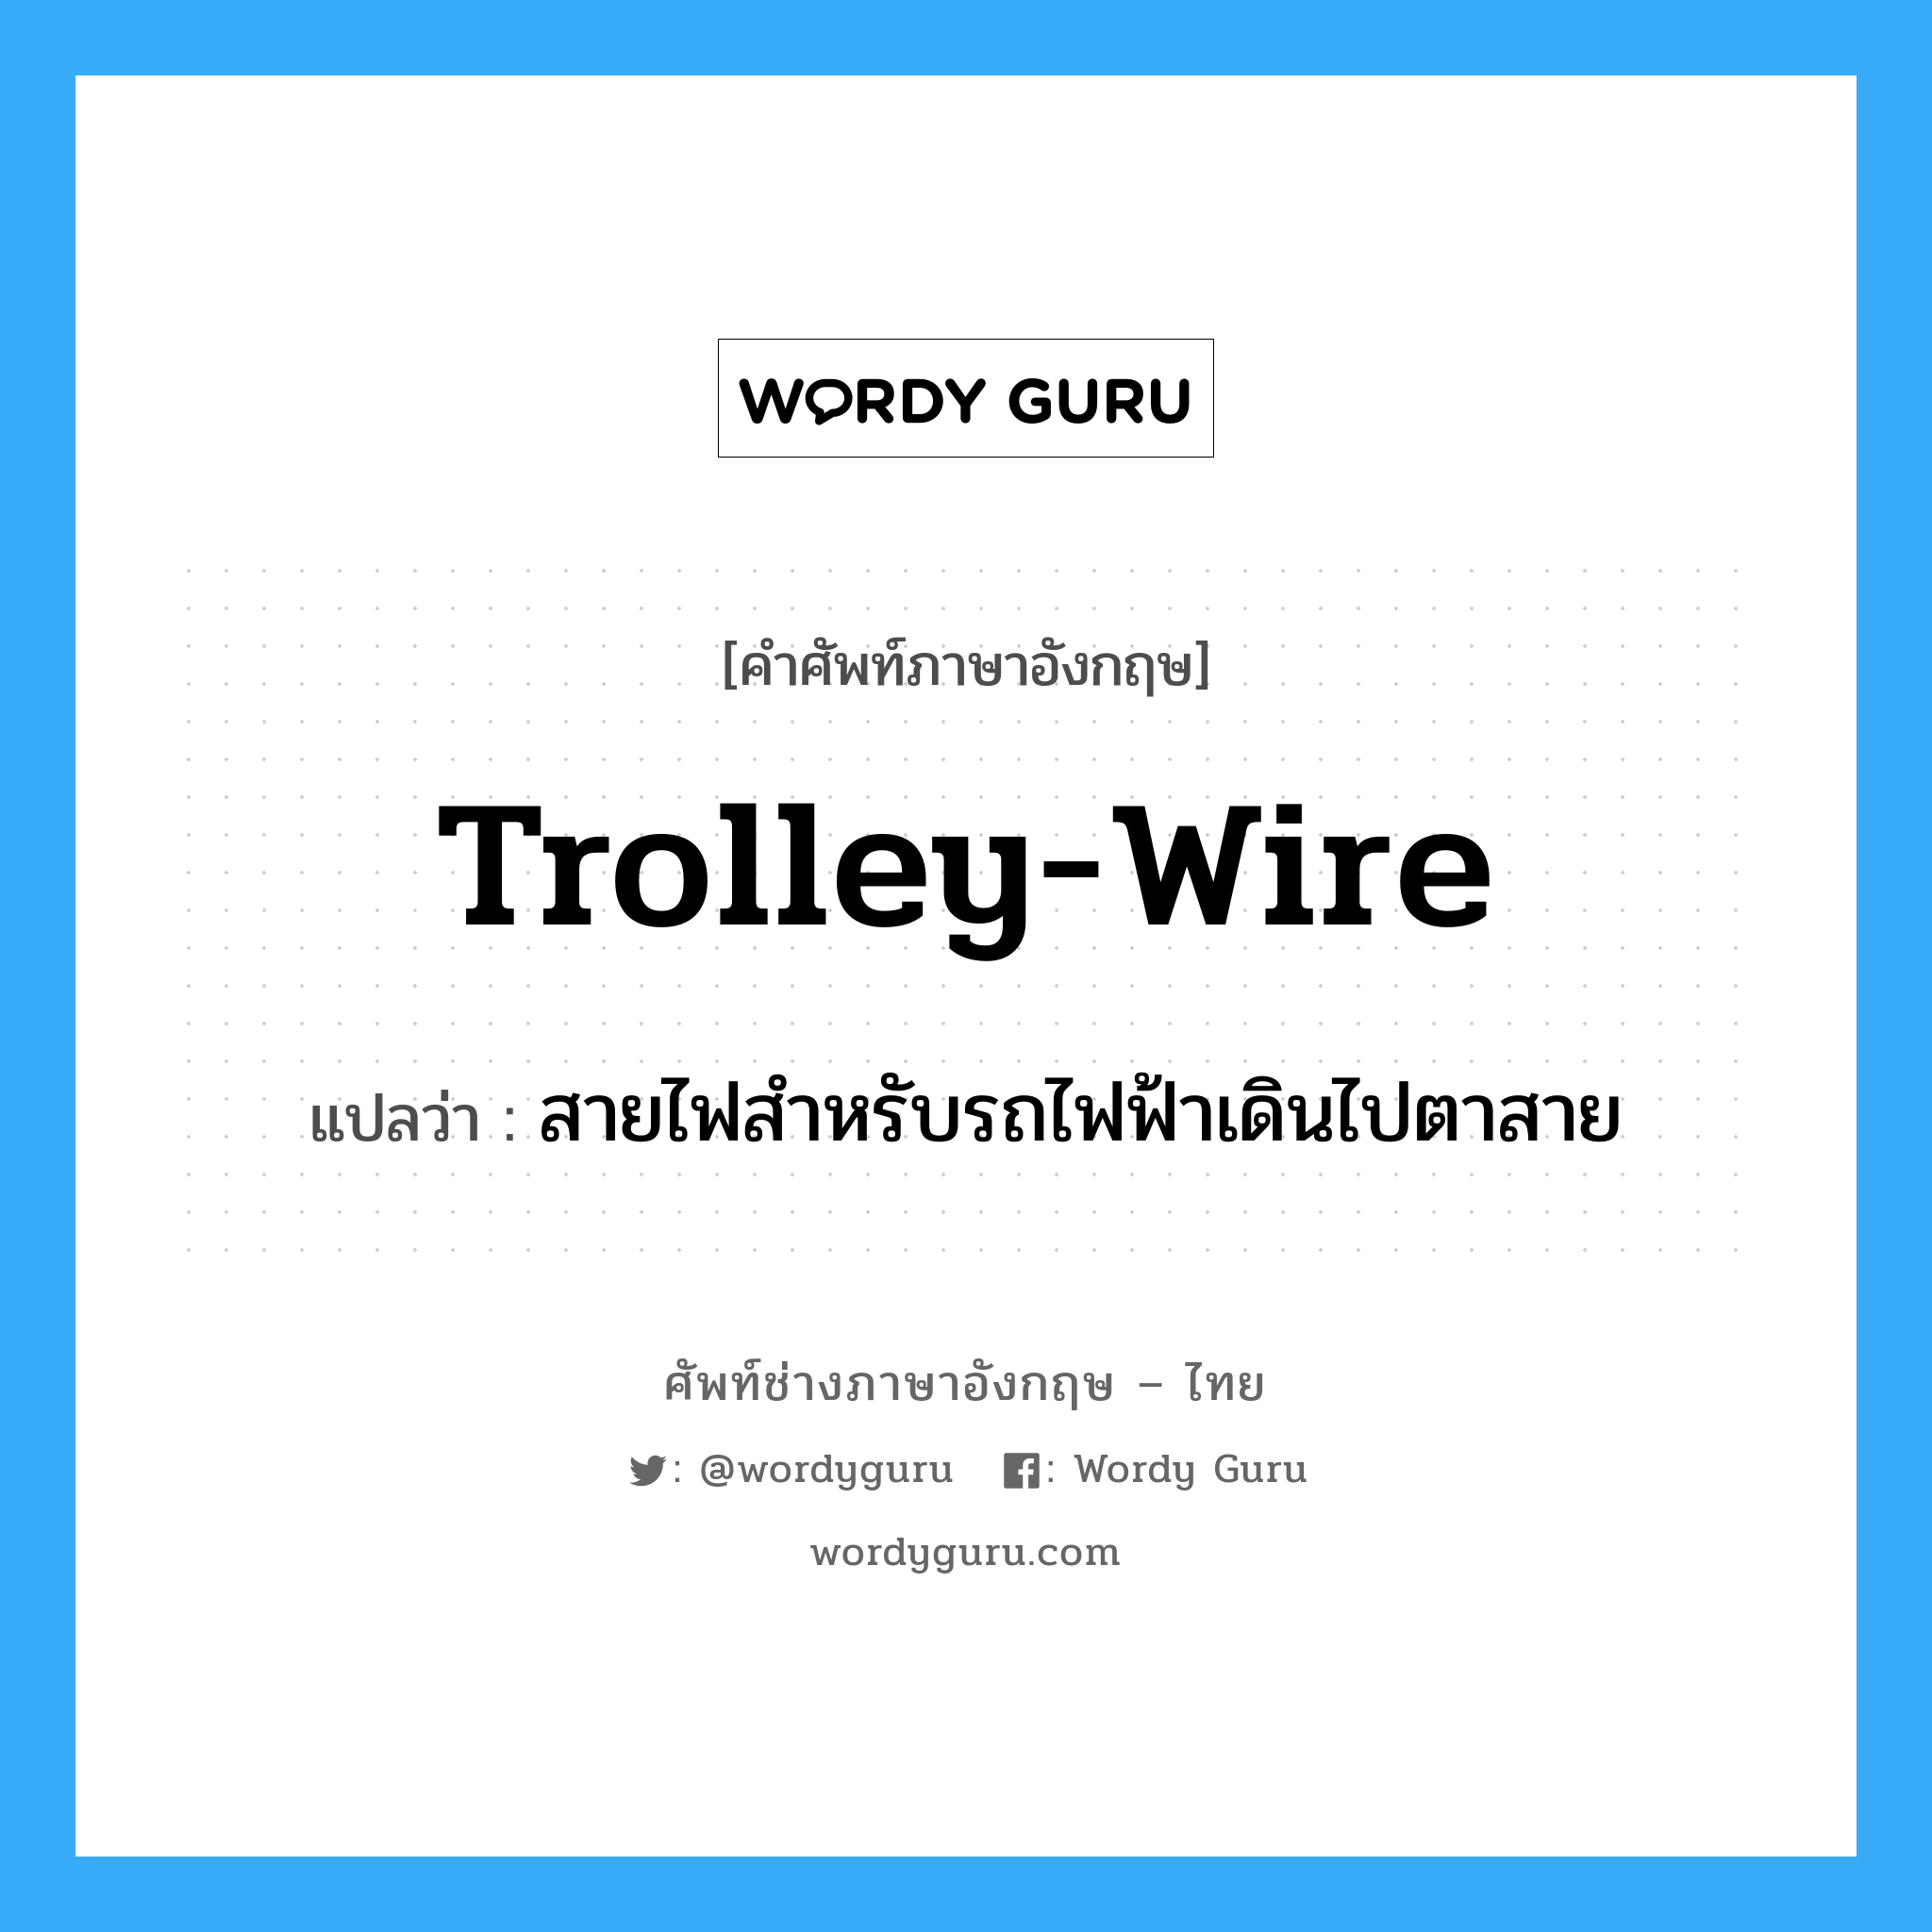 trolley-wire แปลว่า?, คำศัพท์ช่างภาษาอังกฤษ - ไทย trolley-wire คำศัพท์ภาษาอังกฤษ trolley-wire แปลว่า สายไฟสำหรับรถไฟฟ้าเดินไปตาสาย